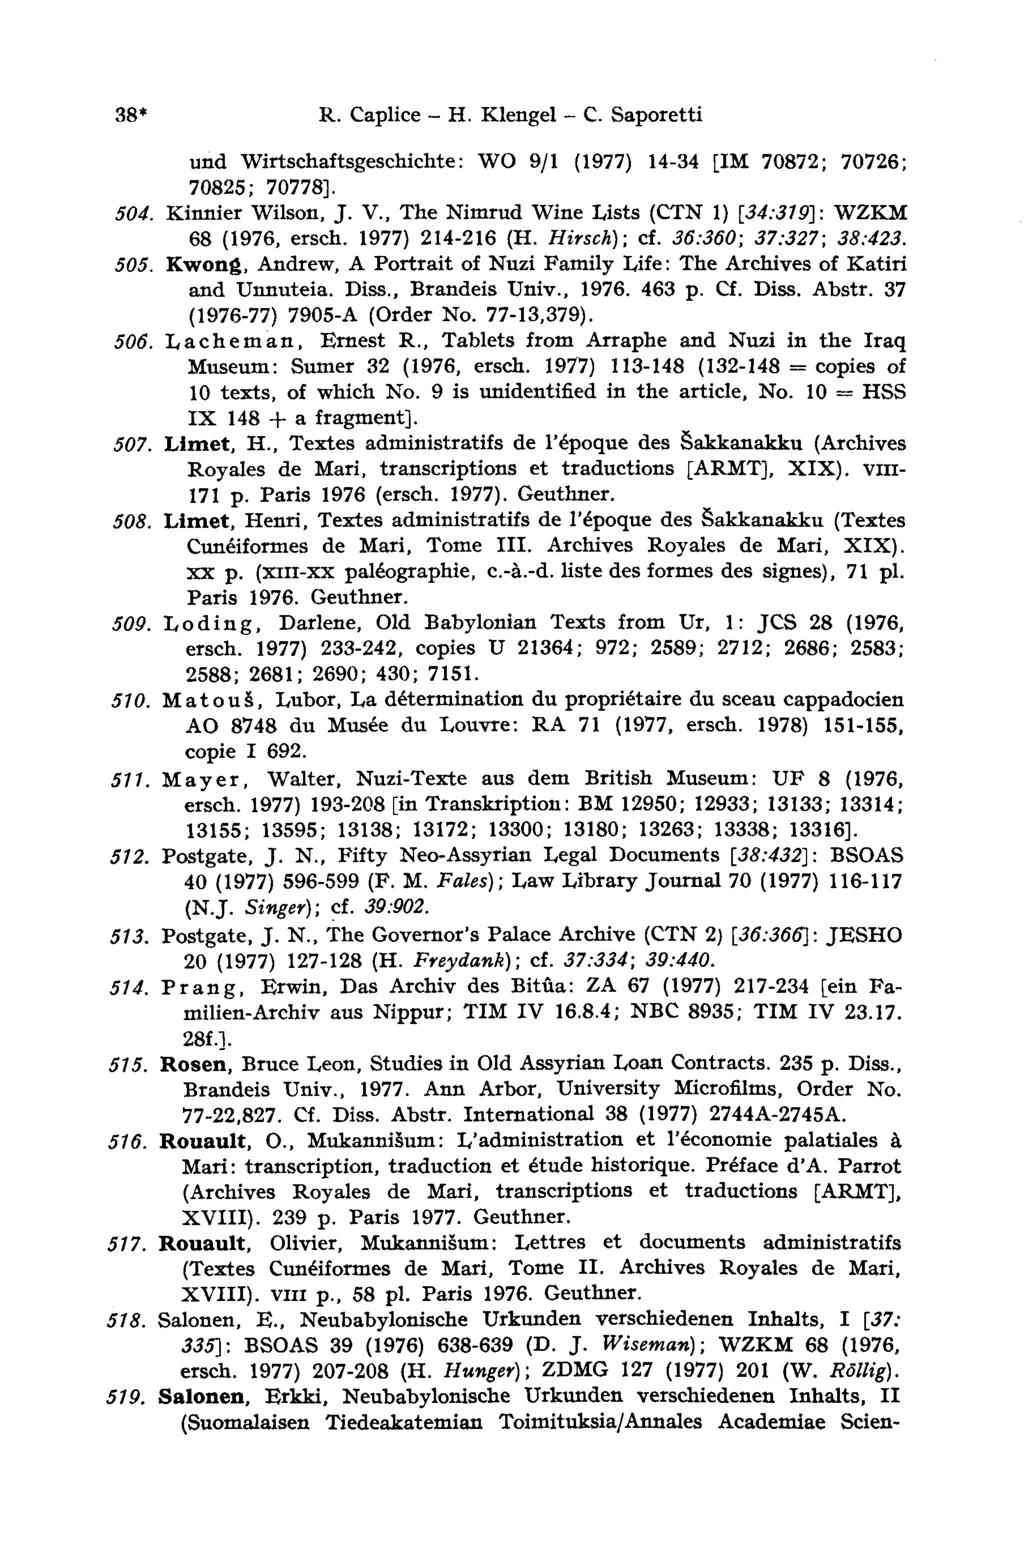 38* R. Caplice - H. Klengel - С. Saporetti und Wirtschaftsgeschichte: WO 9/1 (1977) 14-34 [IM 70872; 70726; 70825; 70778]. 504. Kinnier Wilson, J. V.